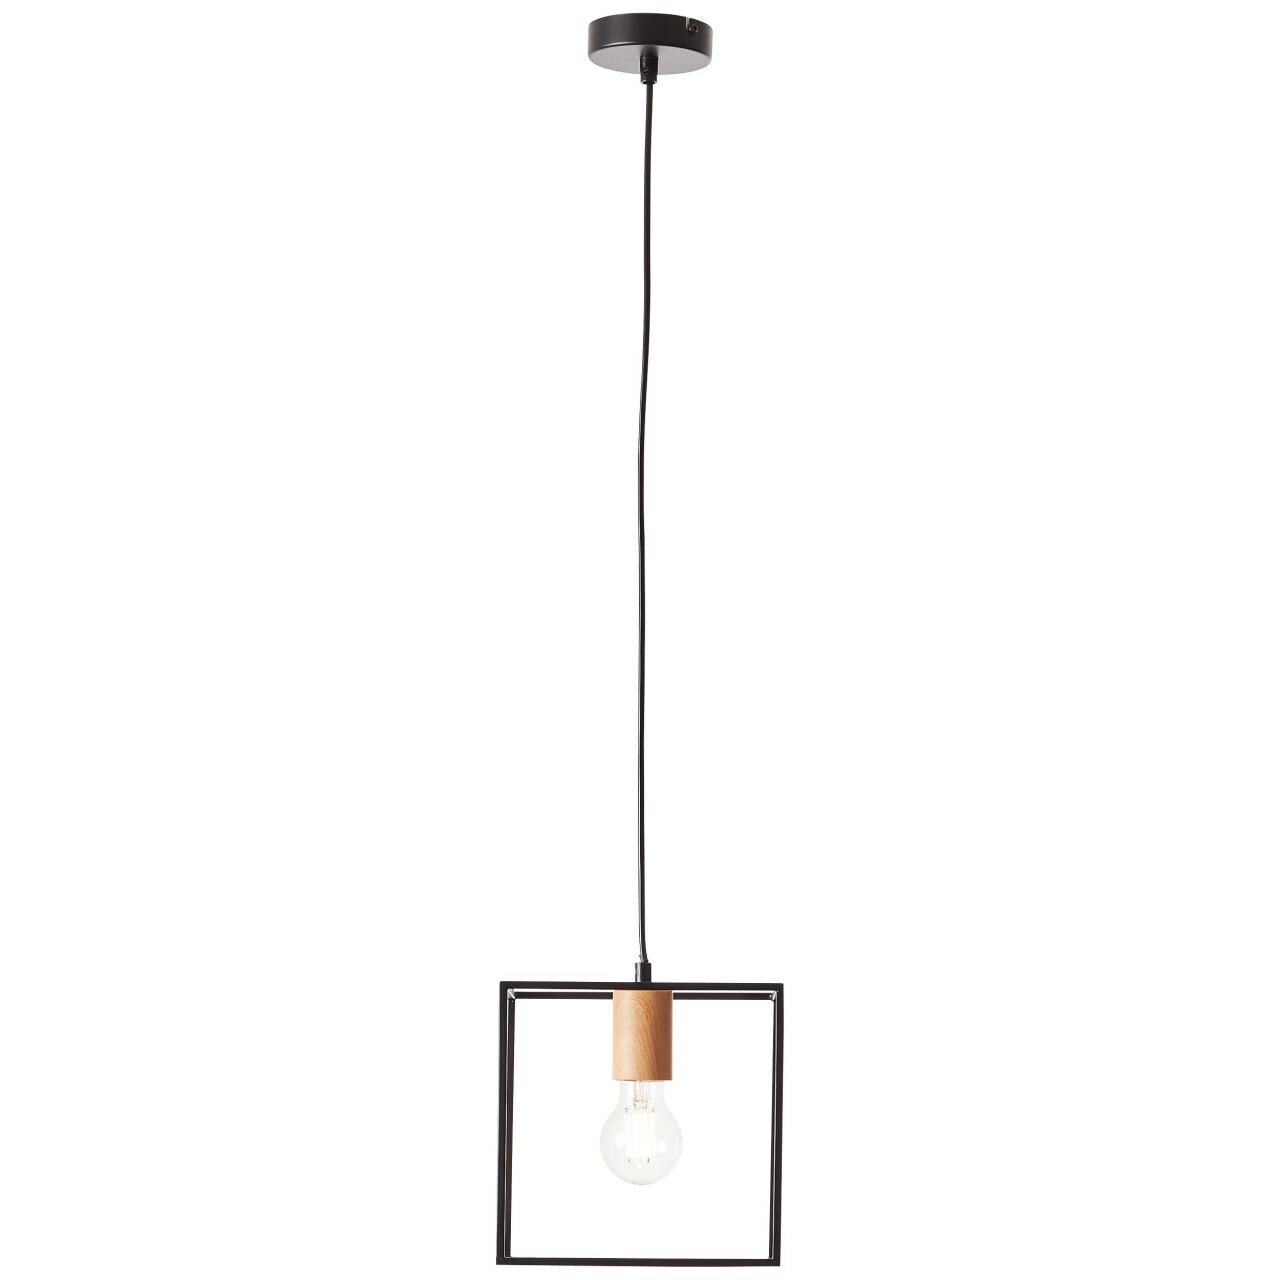 BRILLIANT Lampe, Arica Pendelleuchte 20x20cm schwarz/holzfarbend, 1x A60, E27, 60W, Kabel kürzbar / in der Höhe einstell